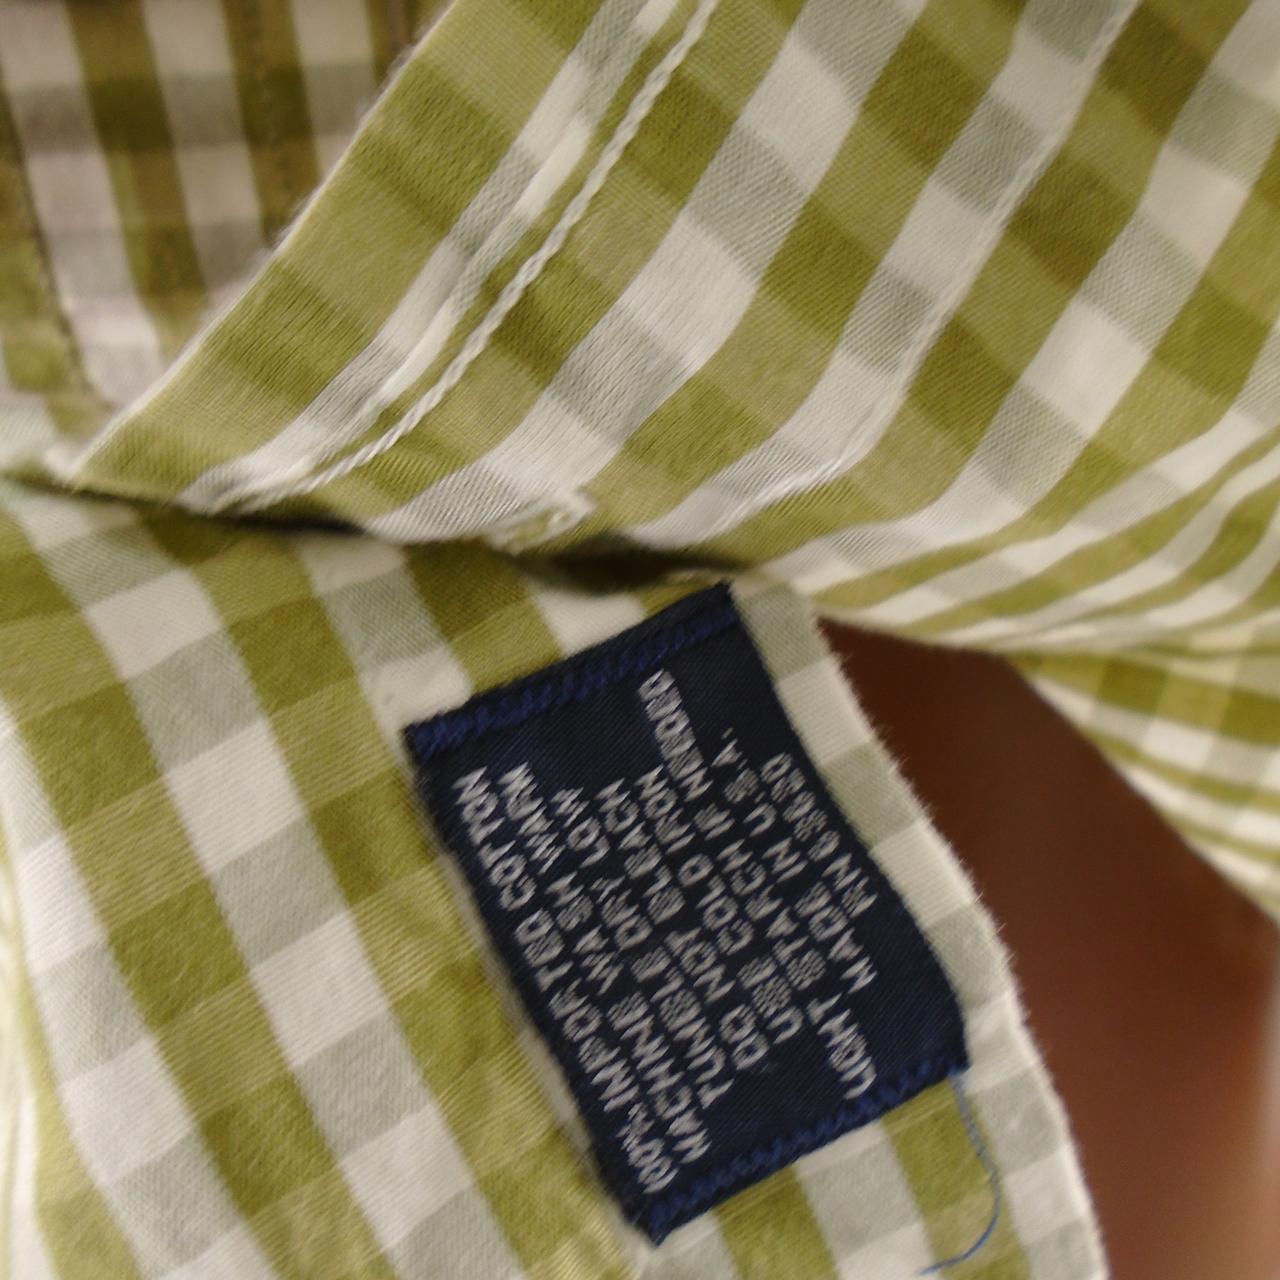 Camisa de hombre Burberry. Multicolor. L. Nuevo sin etiquetas